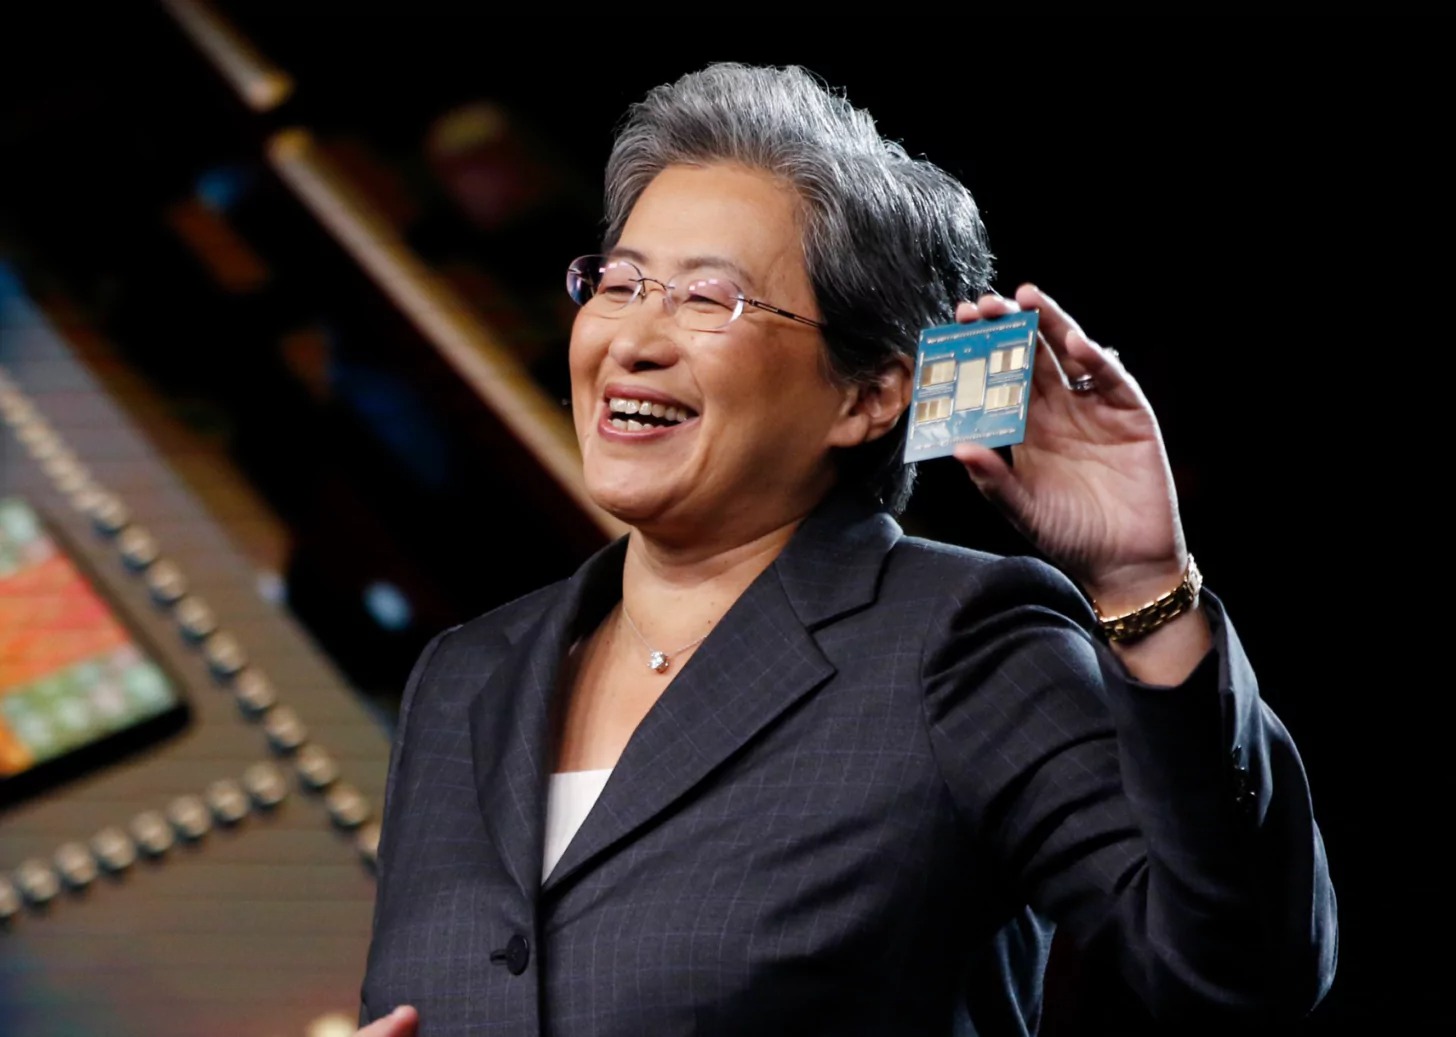 Η AMD κατακτά 30% μερίδιο αγοράς στις CPU καθώς η Intel συνεχίζει να υποχωρεί